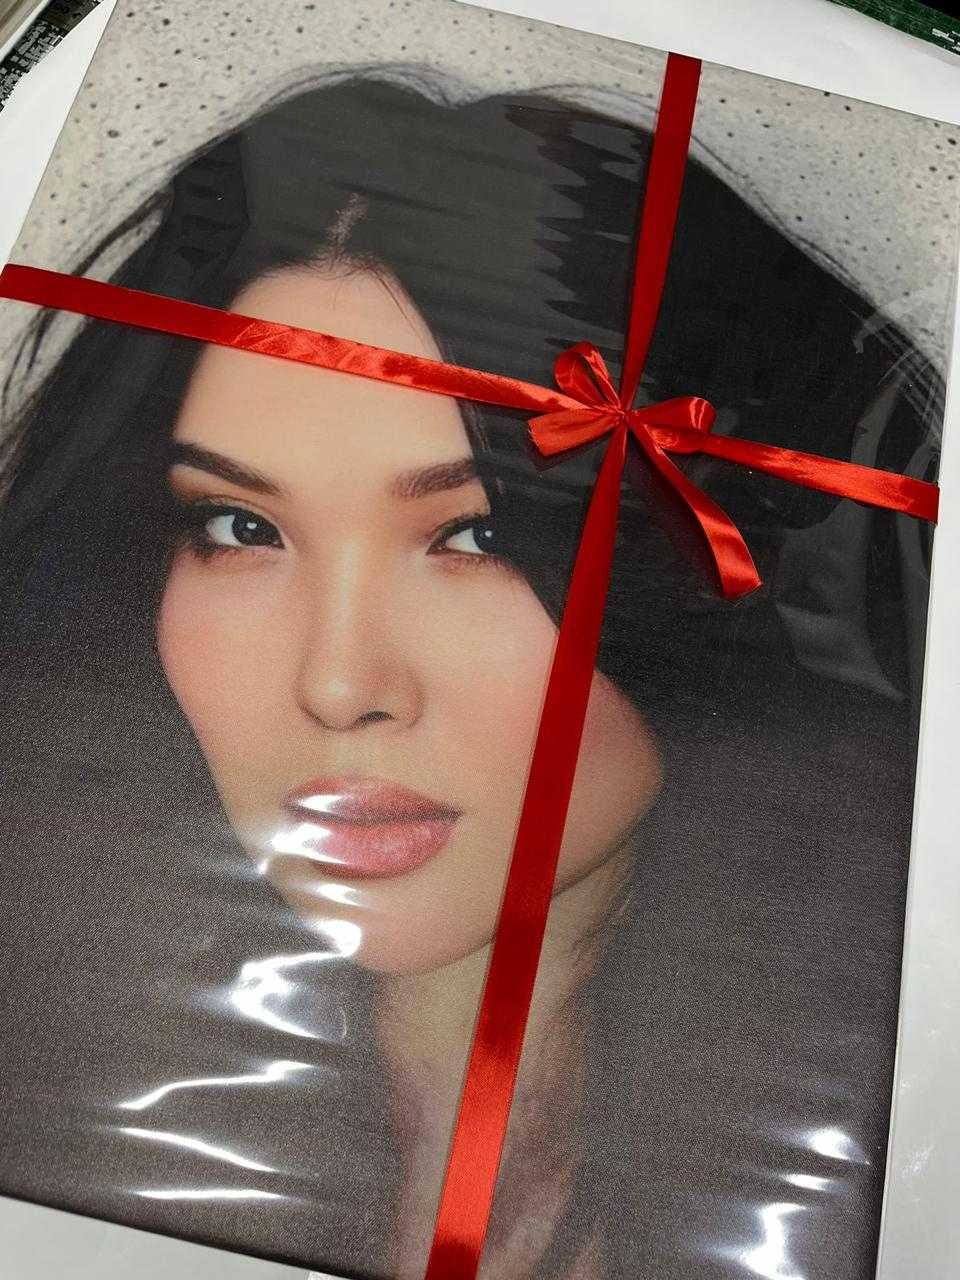 Подарок в виде портрета по цене букета, печать на холсте.